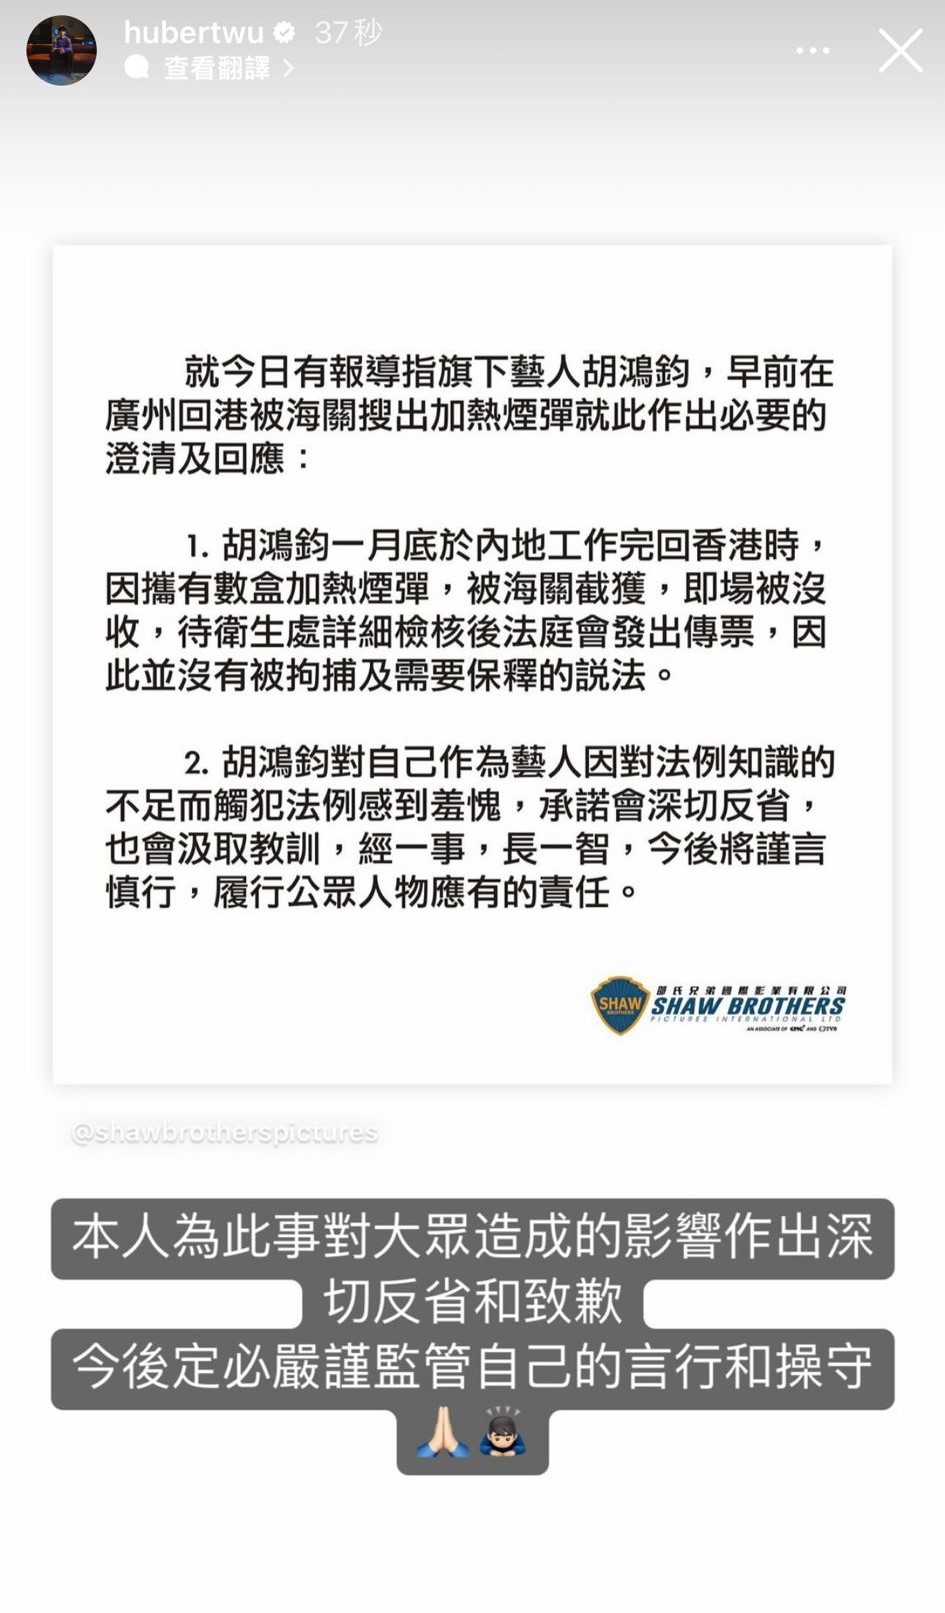 胡鸿钧就事件于IG回应及道歉。